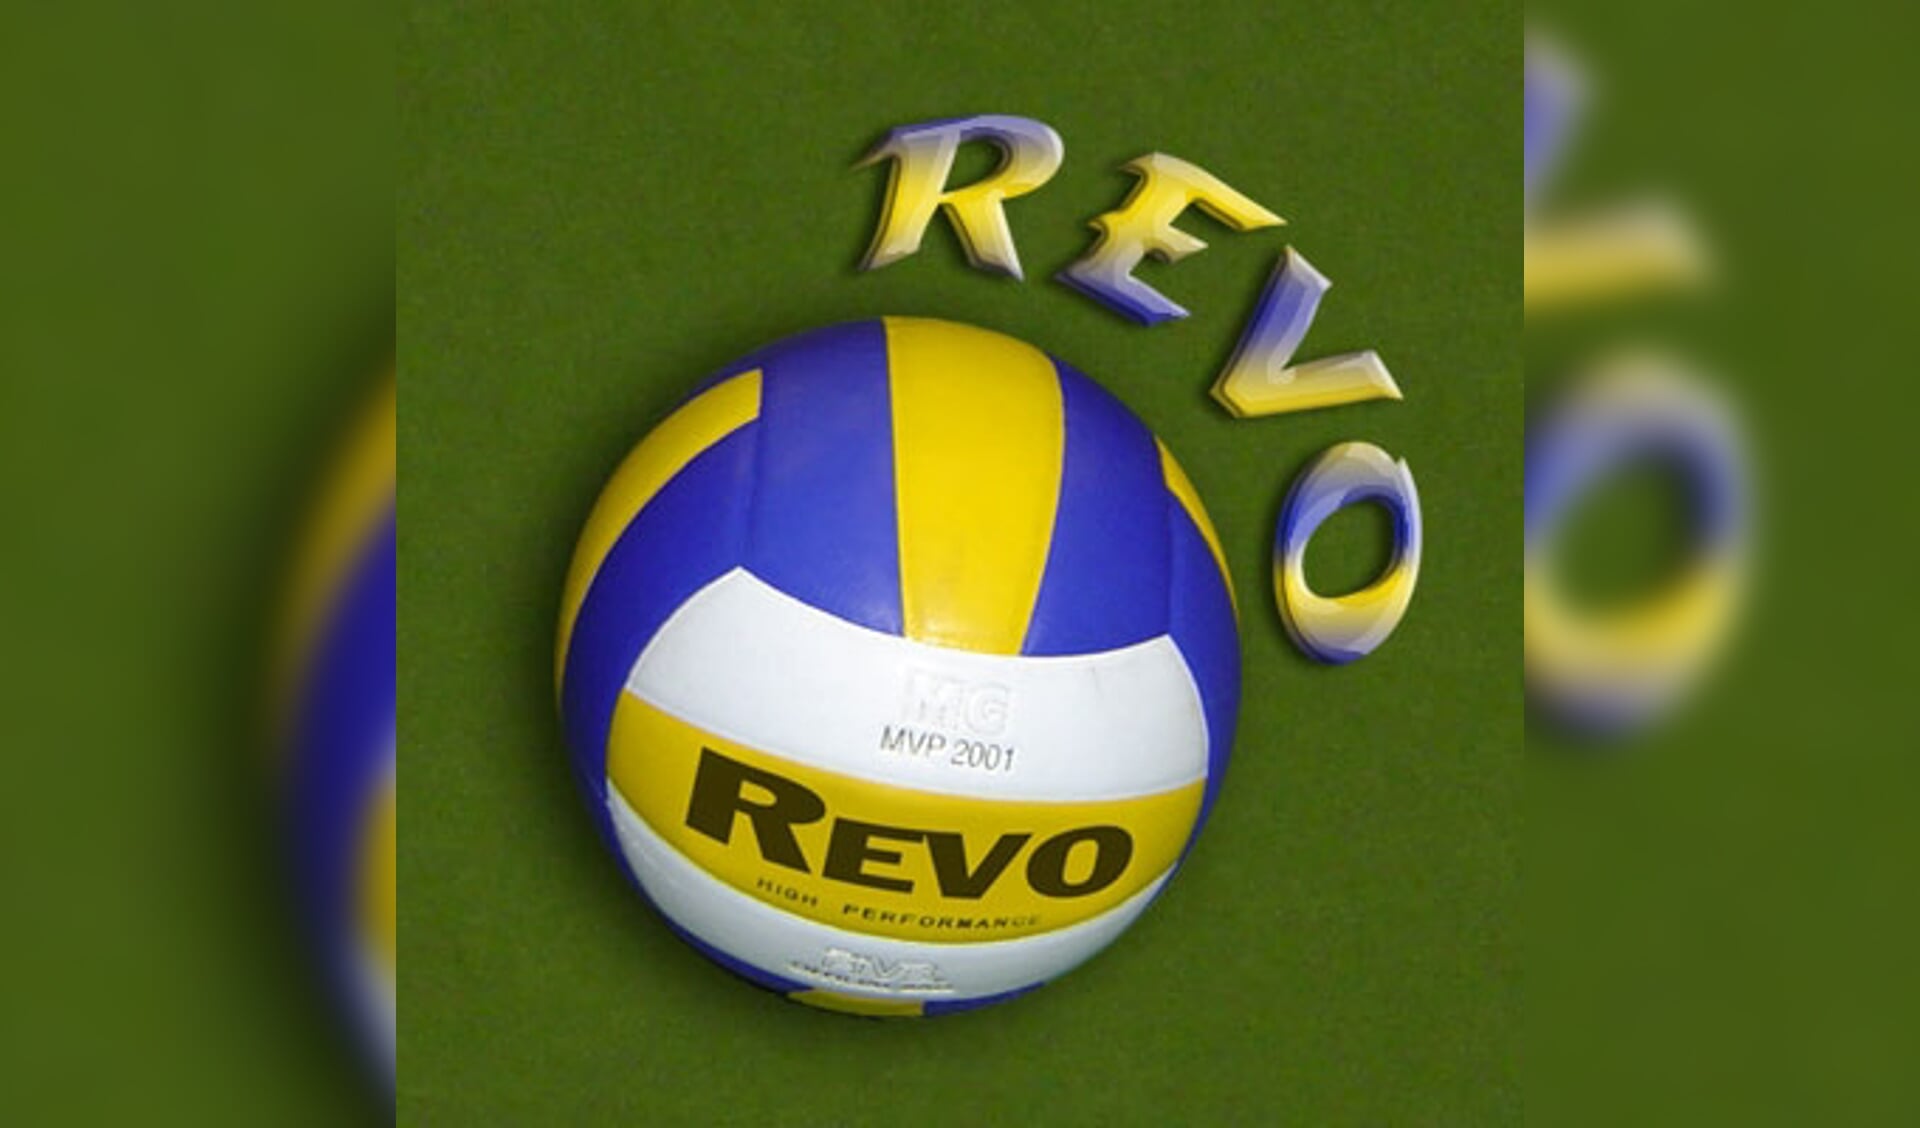 Vrouwen volleybalteam REVO zoekt leden